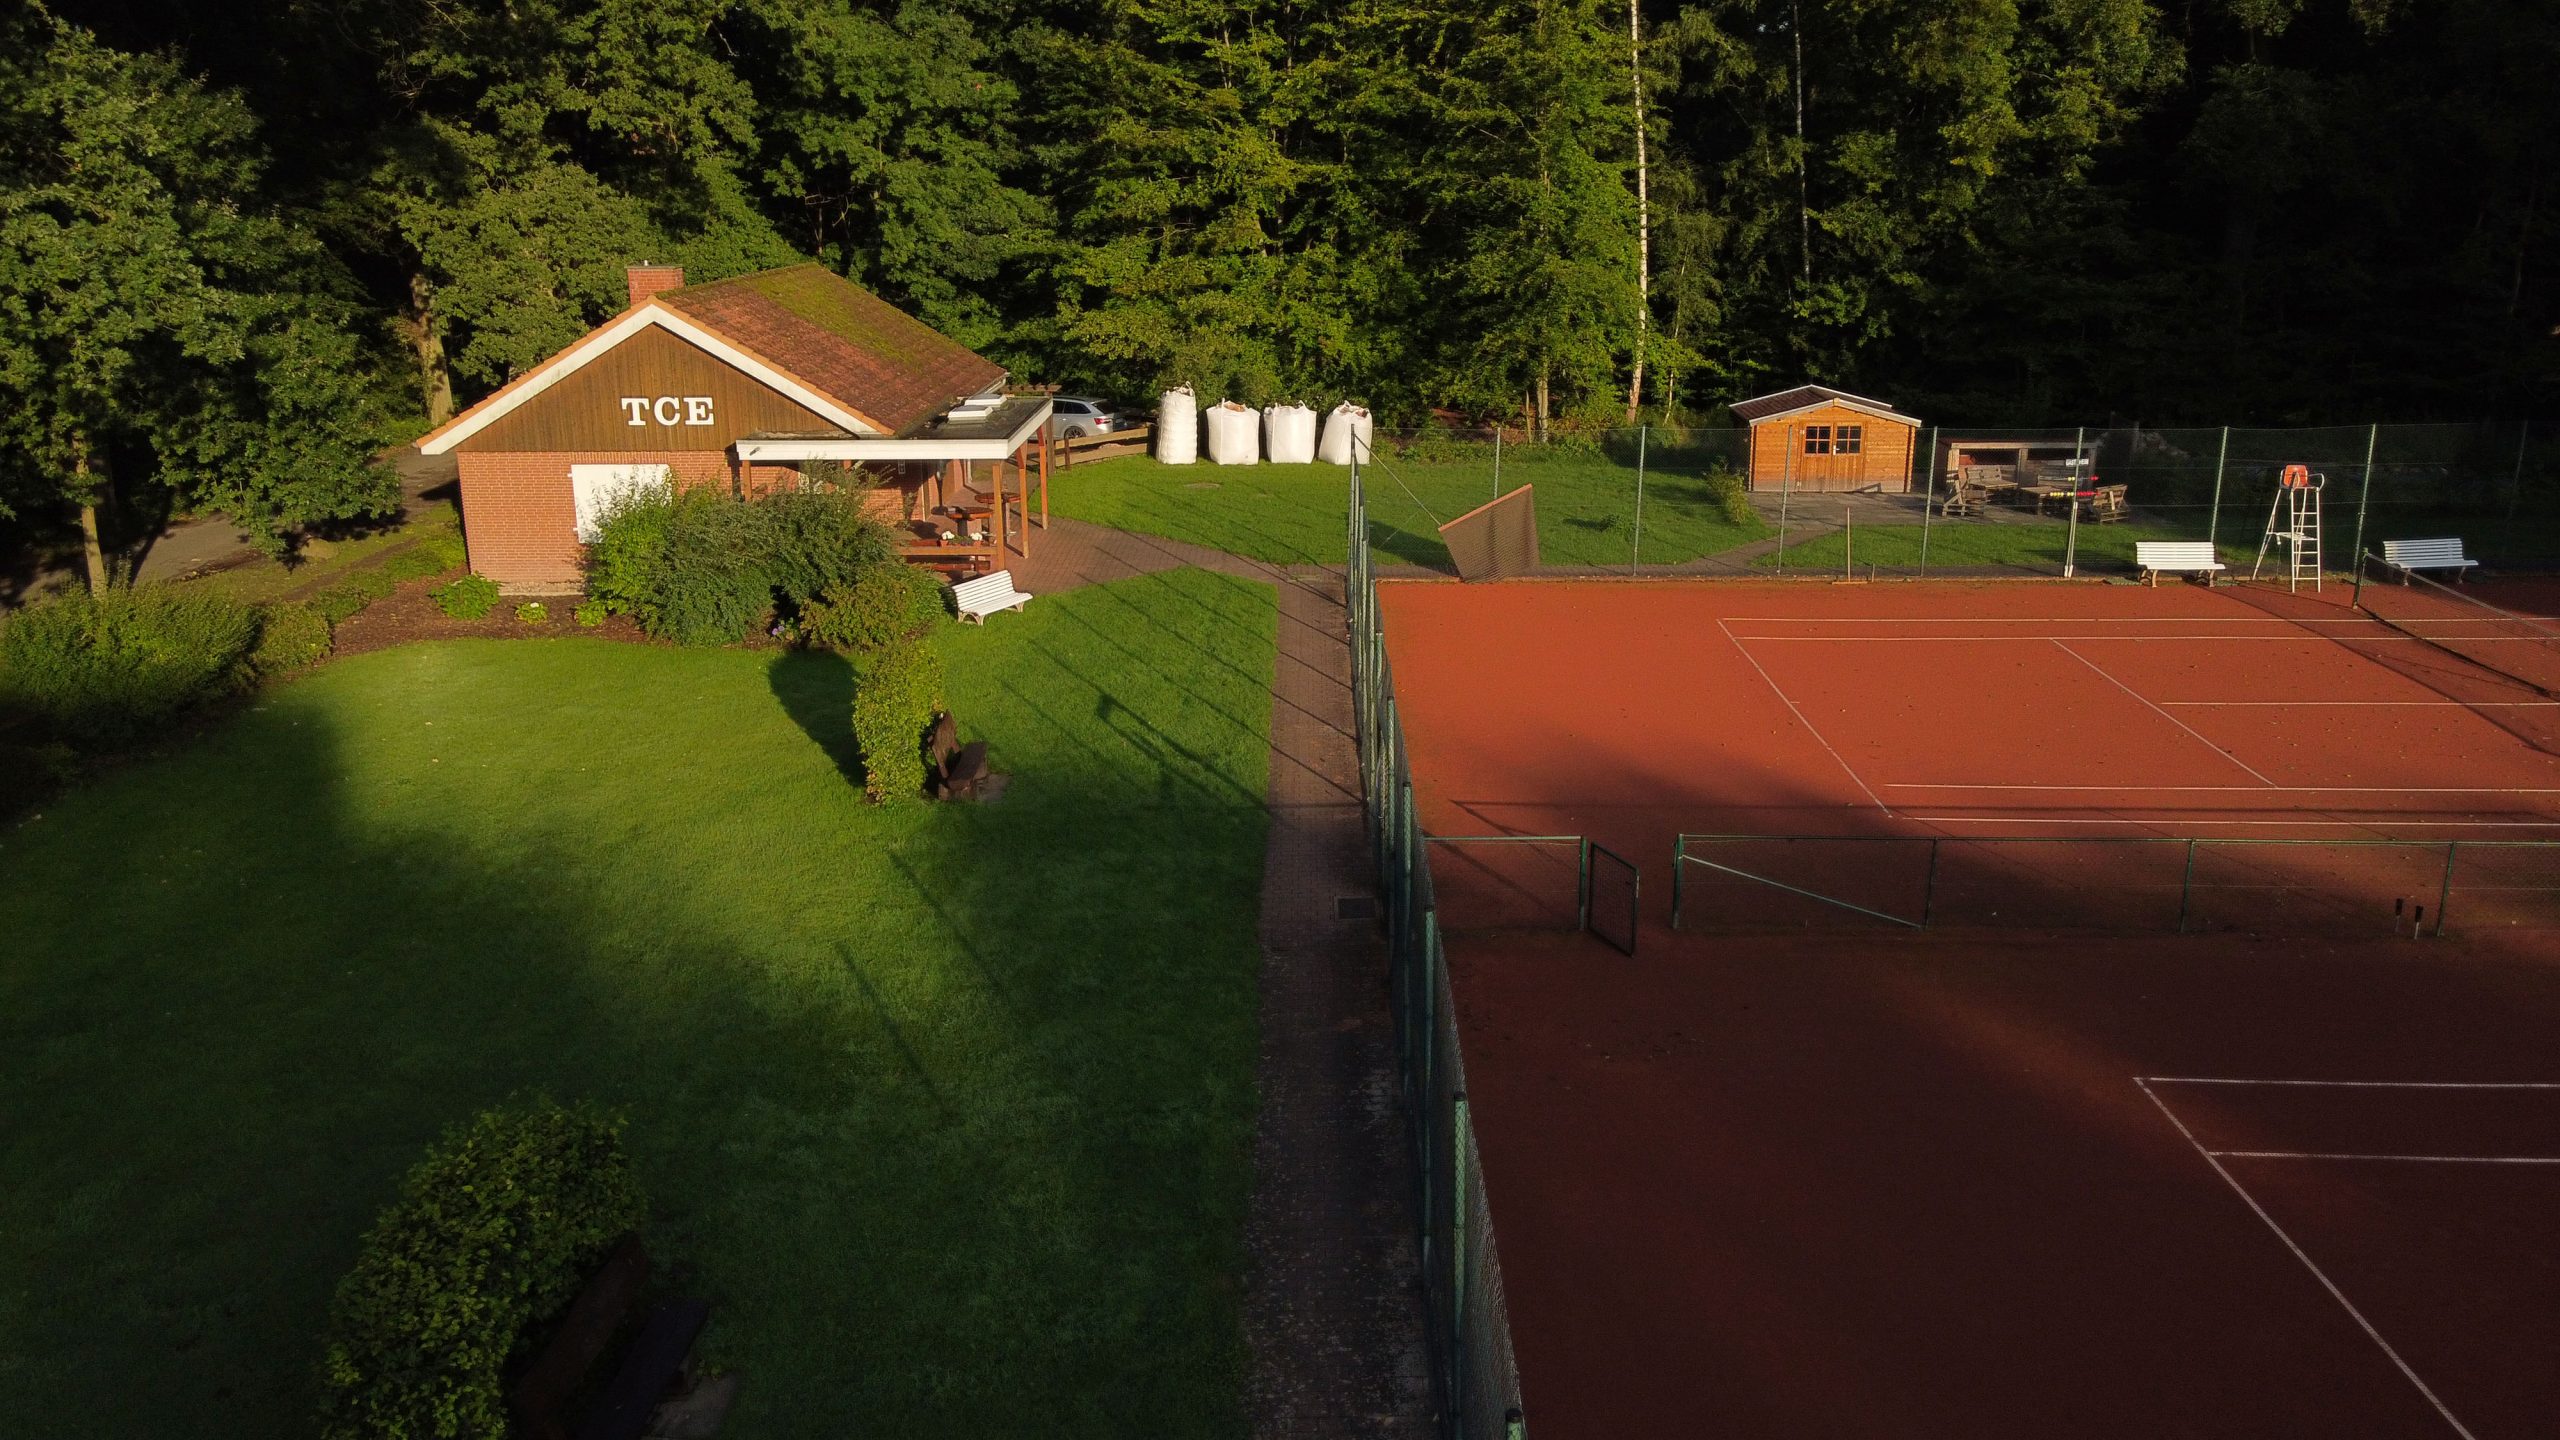 Tennisclub Ebstorf - Das Clubhaus aus der Luft und das neue Gerätehaus.